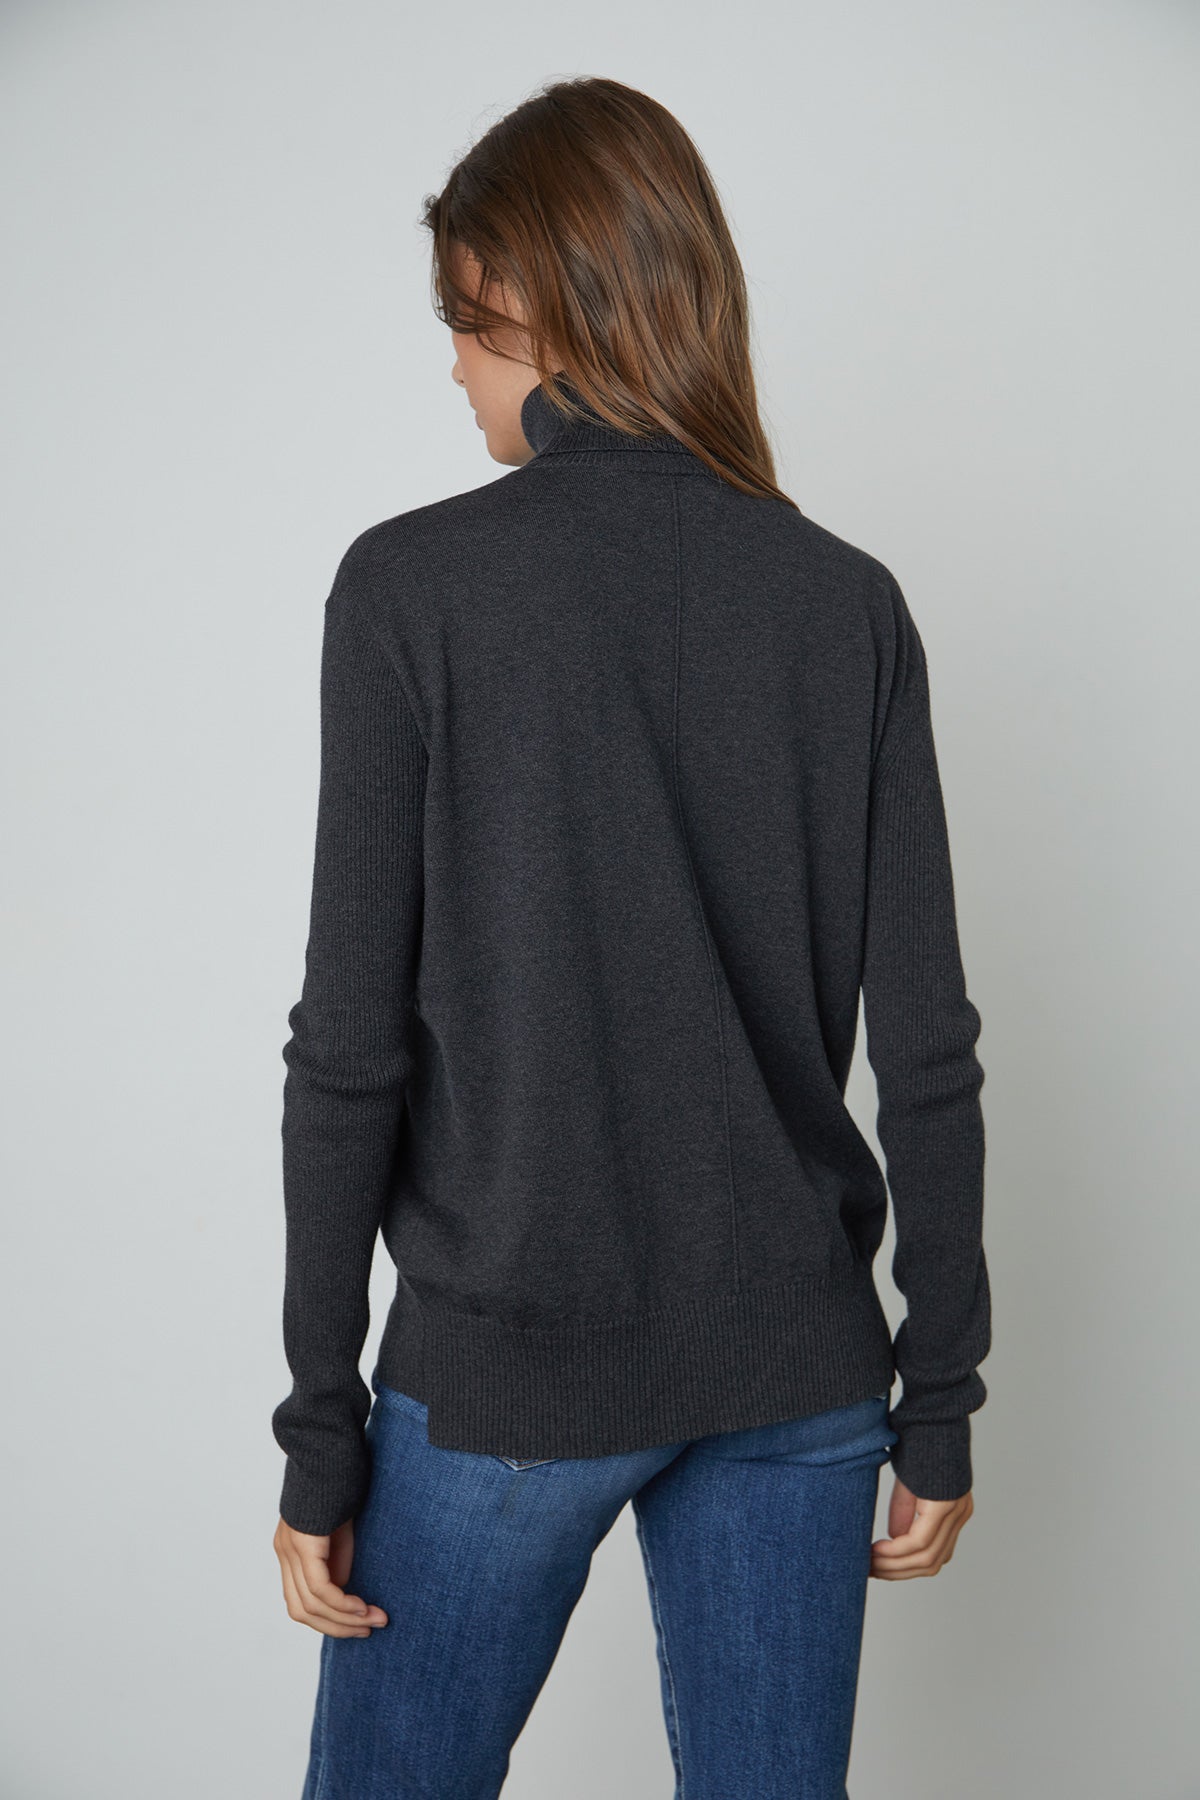   Lux Cotton Cashmere Renny Turtleneck Sweater in dark grey cinder back 